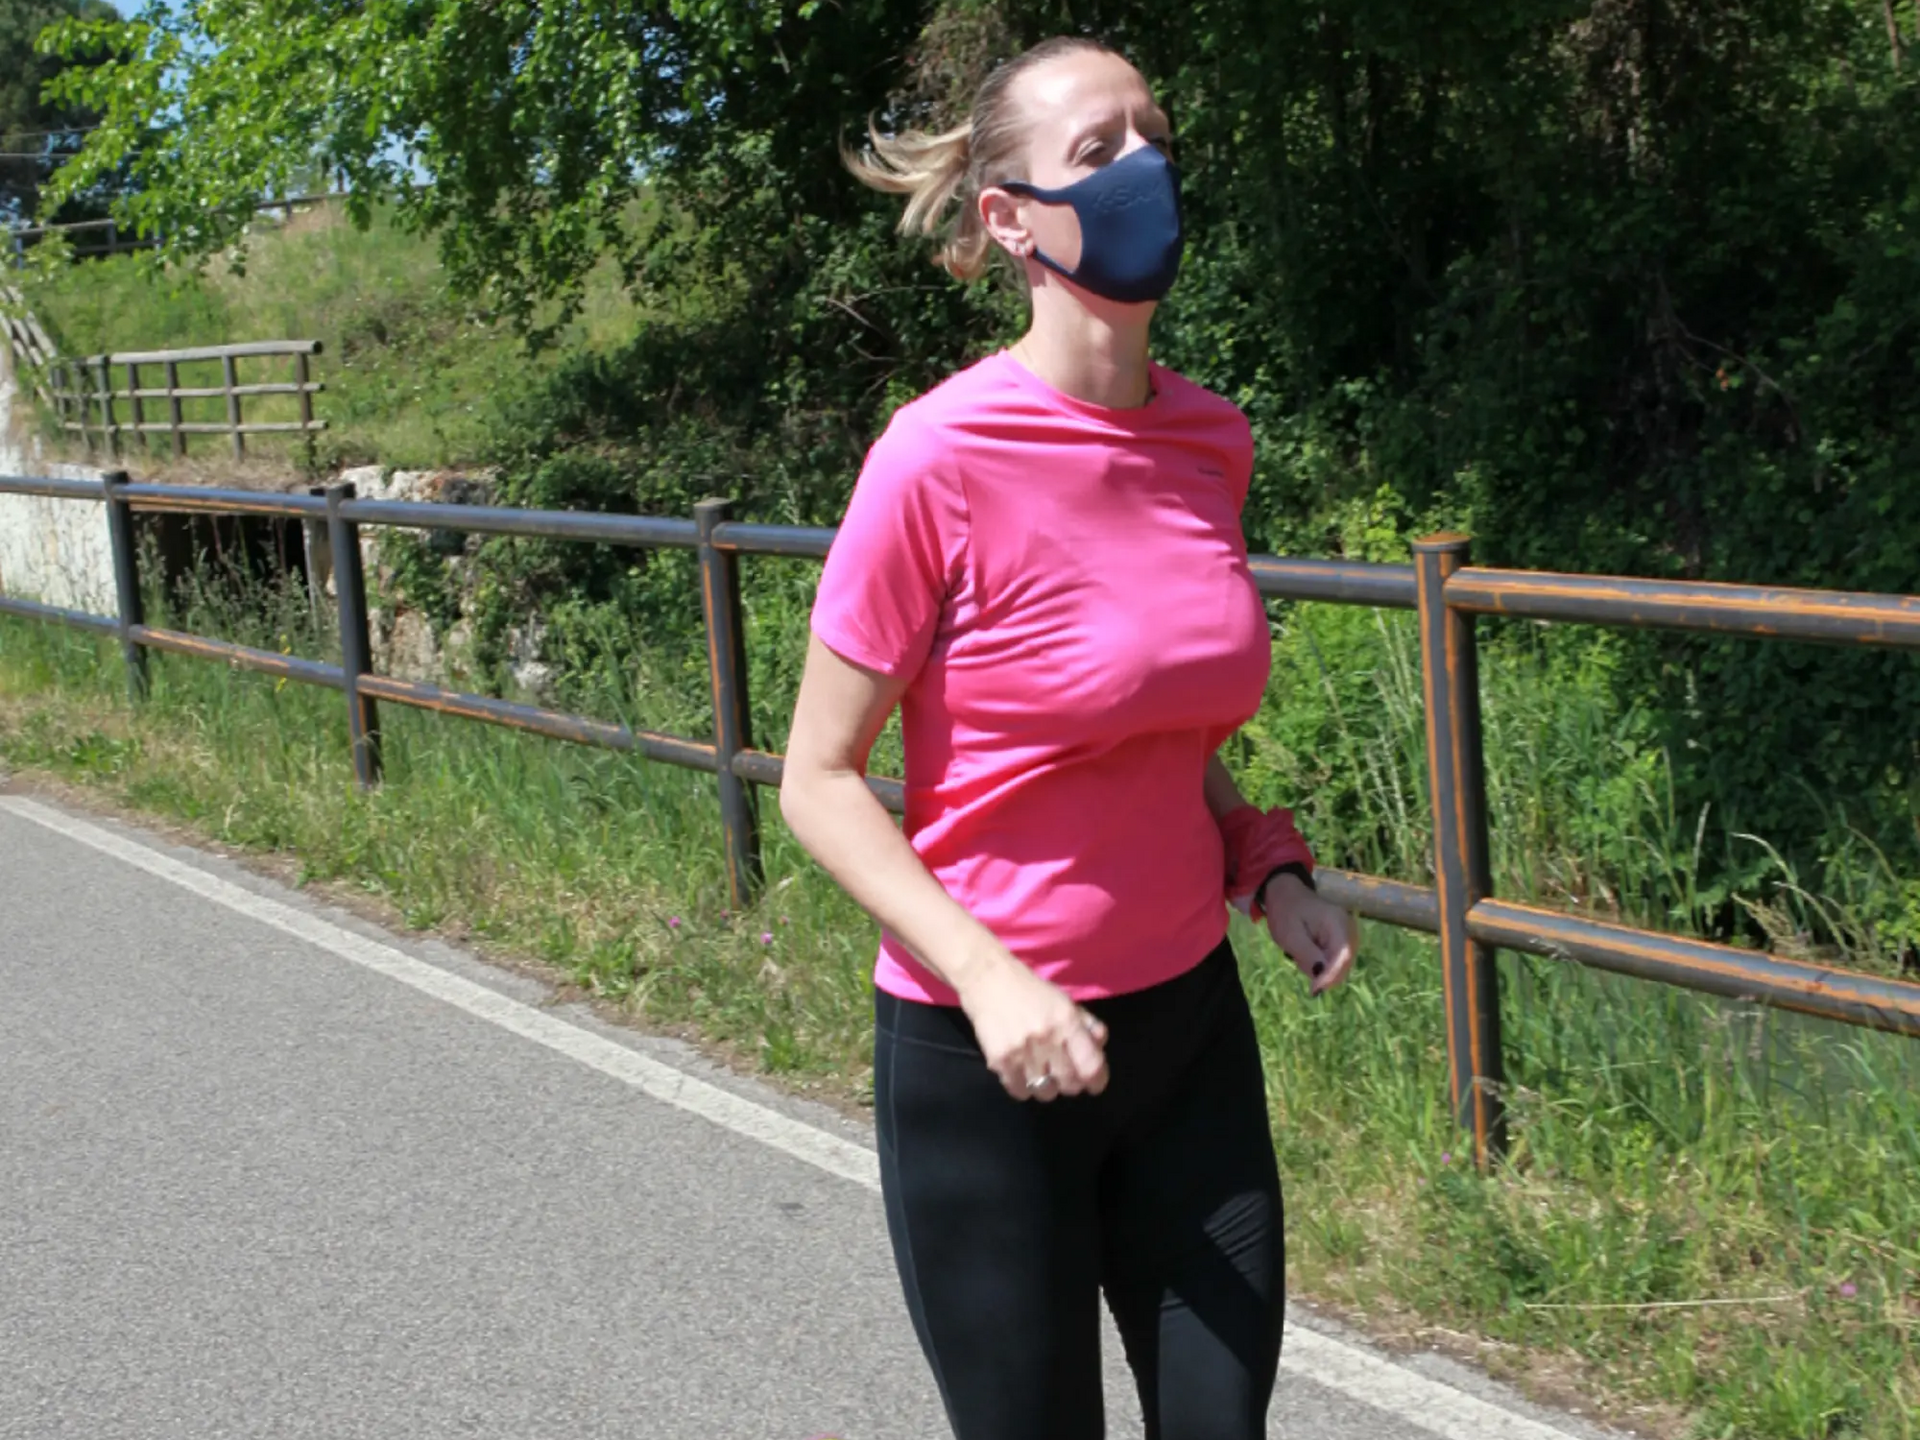 Kobieta biegająca w masce antysmogowej